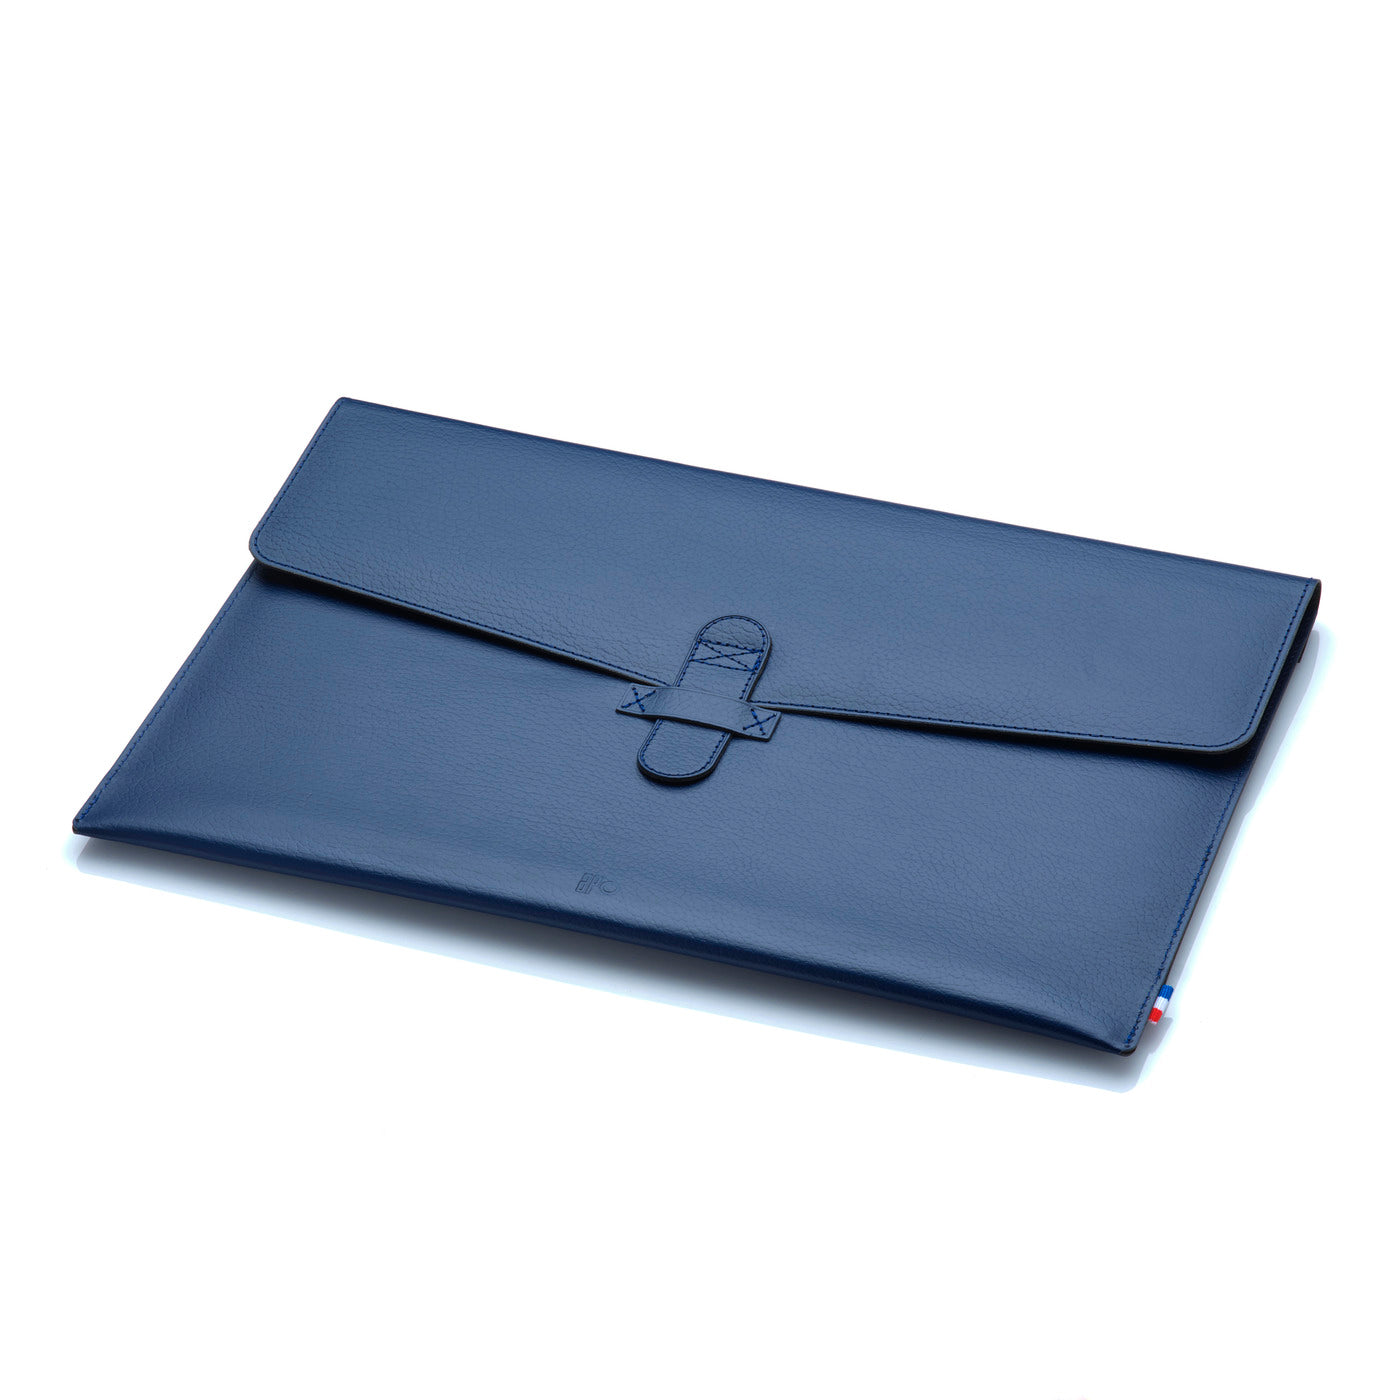 La p'tite housse Marine pour MacBook Air 13 - Bleu